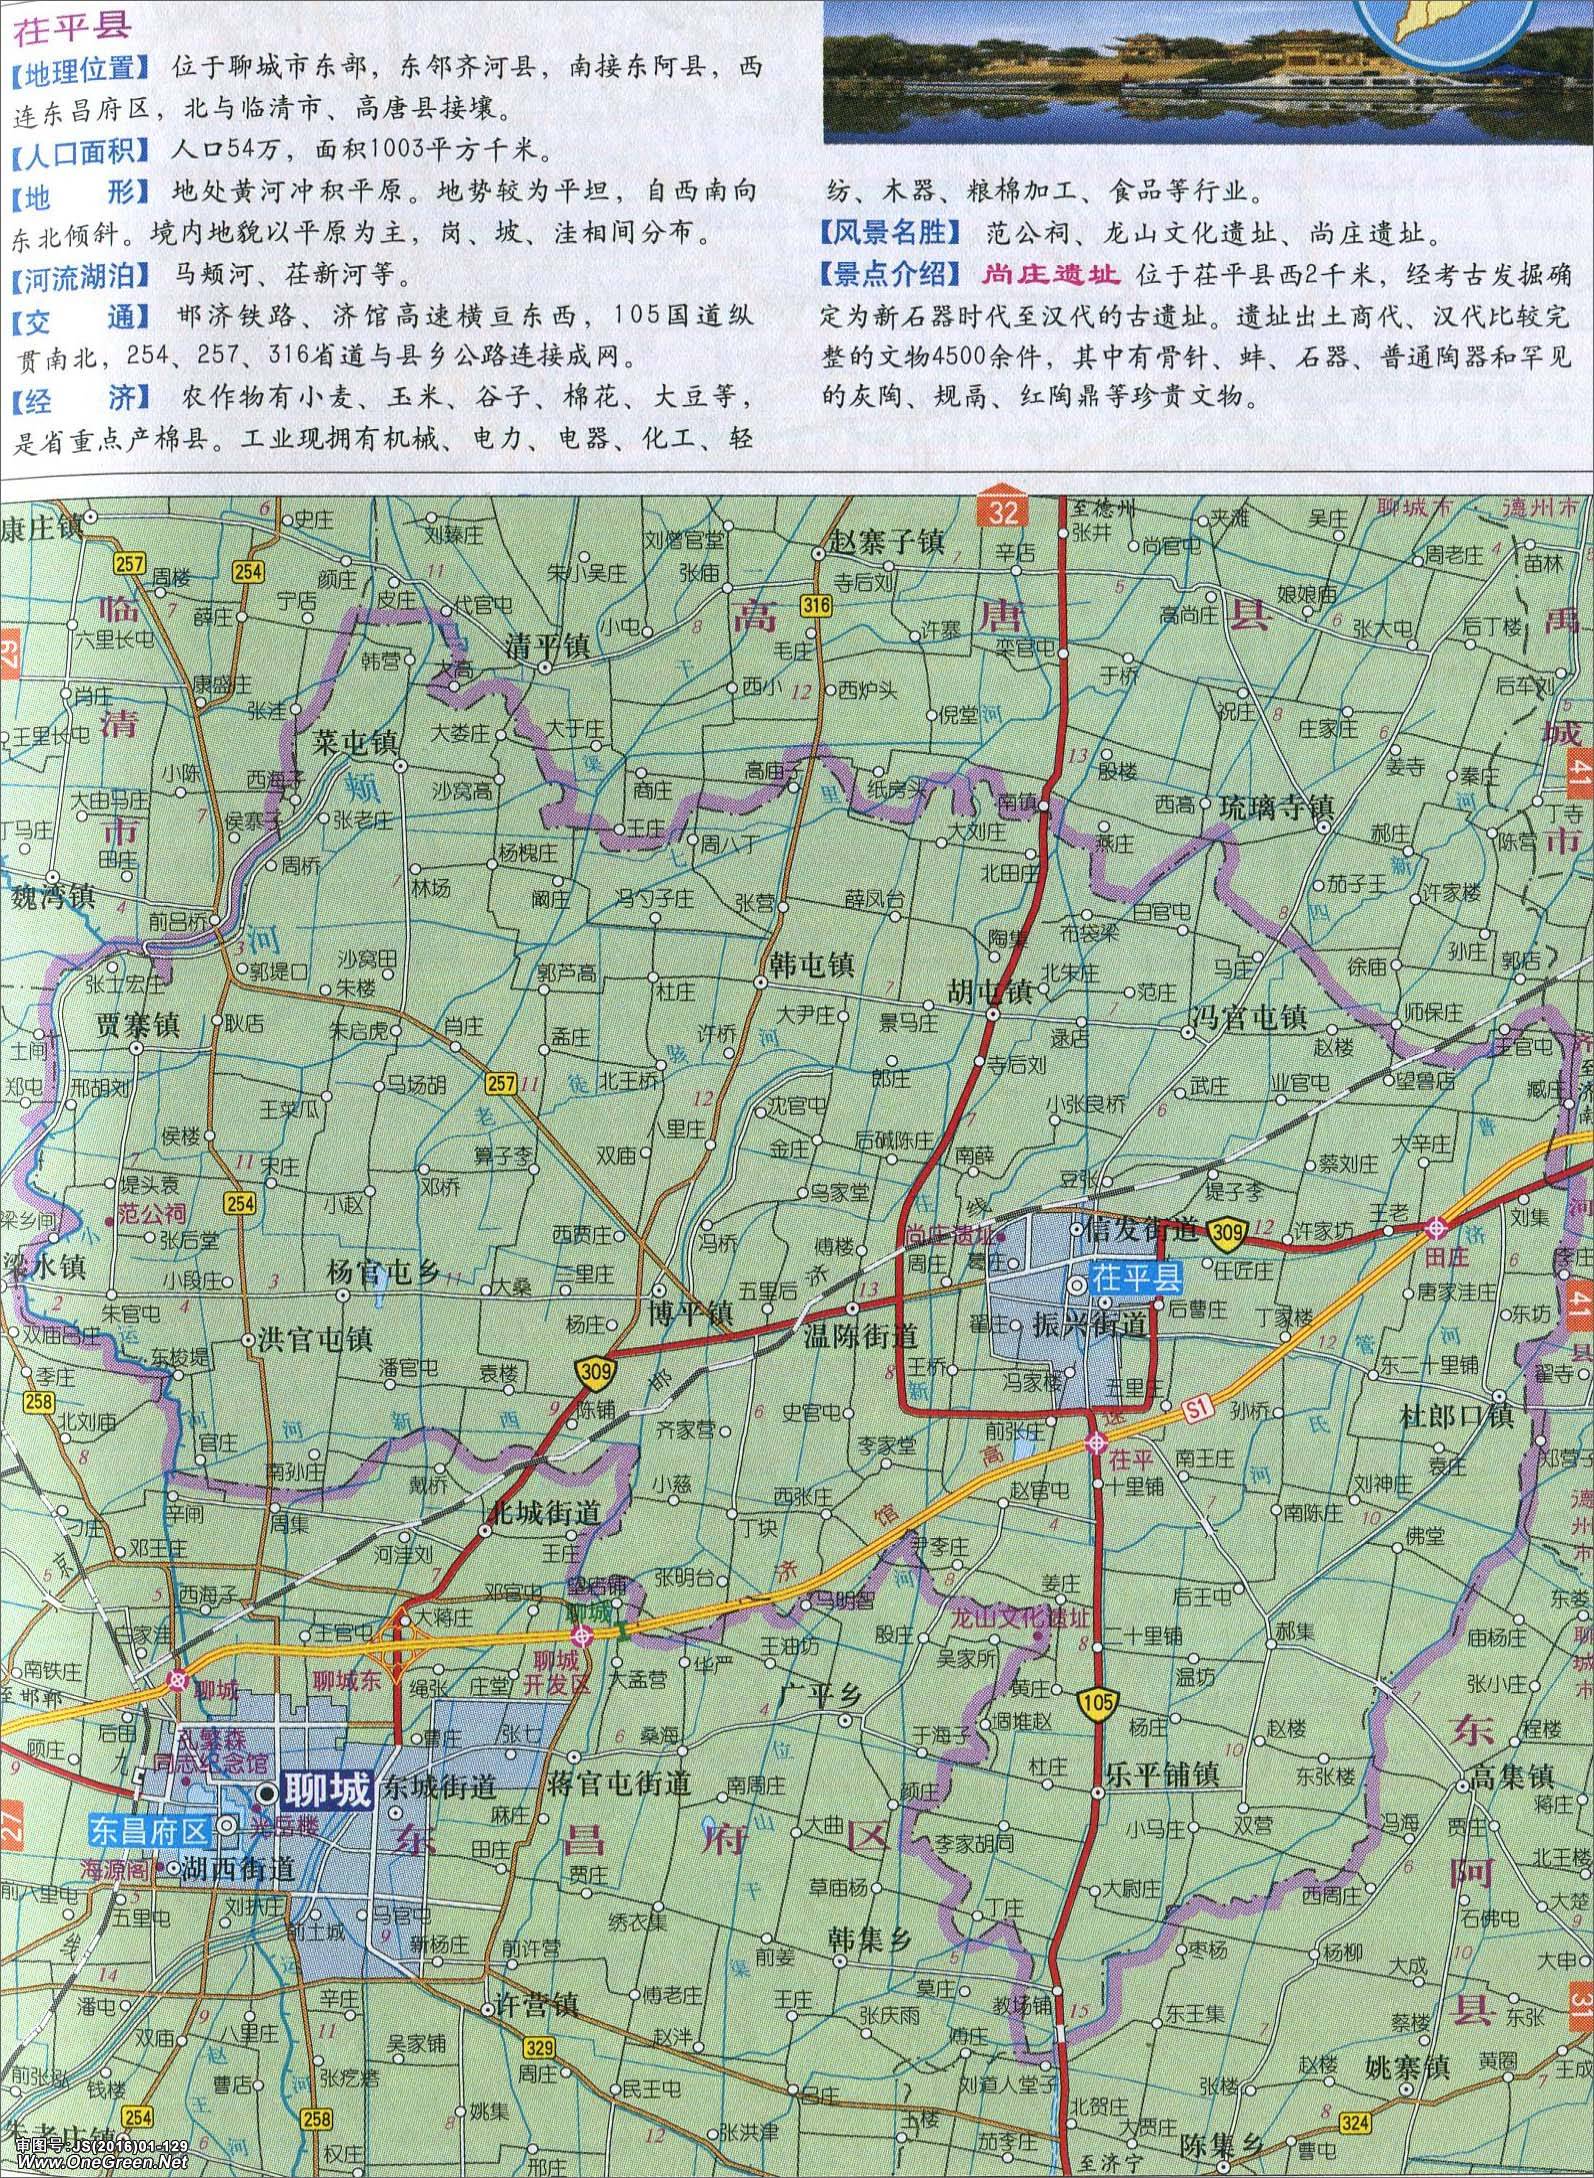 茌平县地图|茌平县地图全图高清版大图片|旅途风景图片网|www.visacits.com